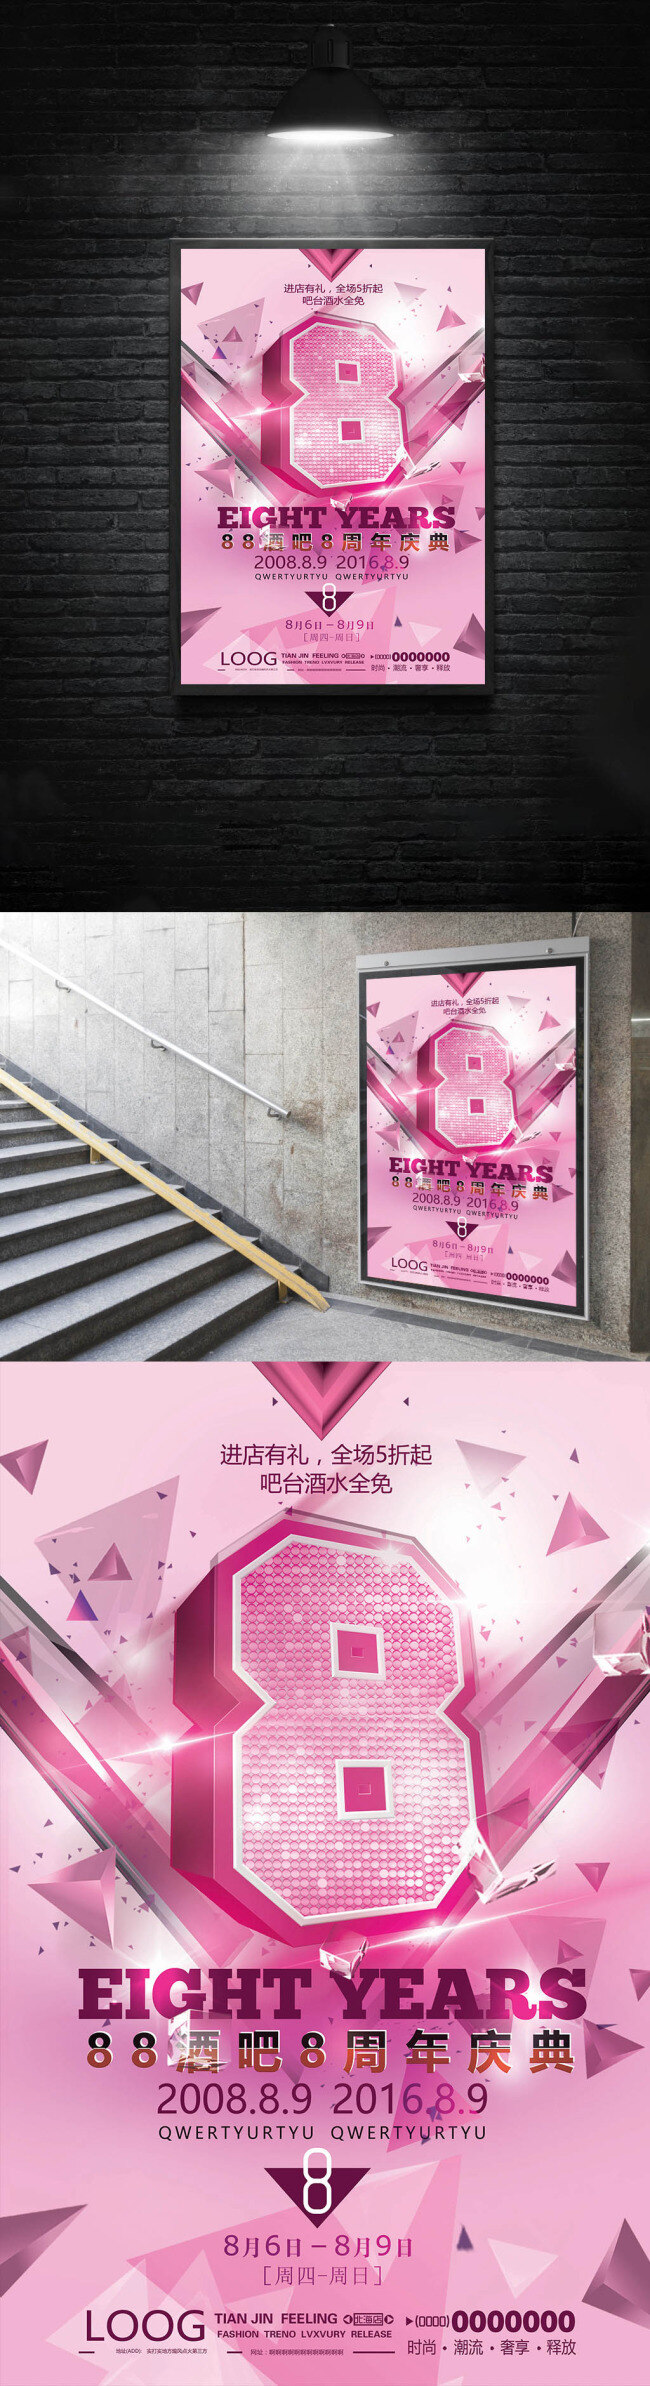 粉红 色系 周年庆 海报 粉红色 背景 酒吧 活动 庆典 大气 8周年 几何 矢量 绚丽 psd分层